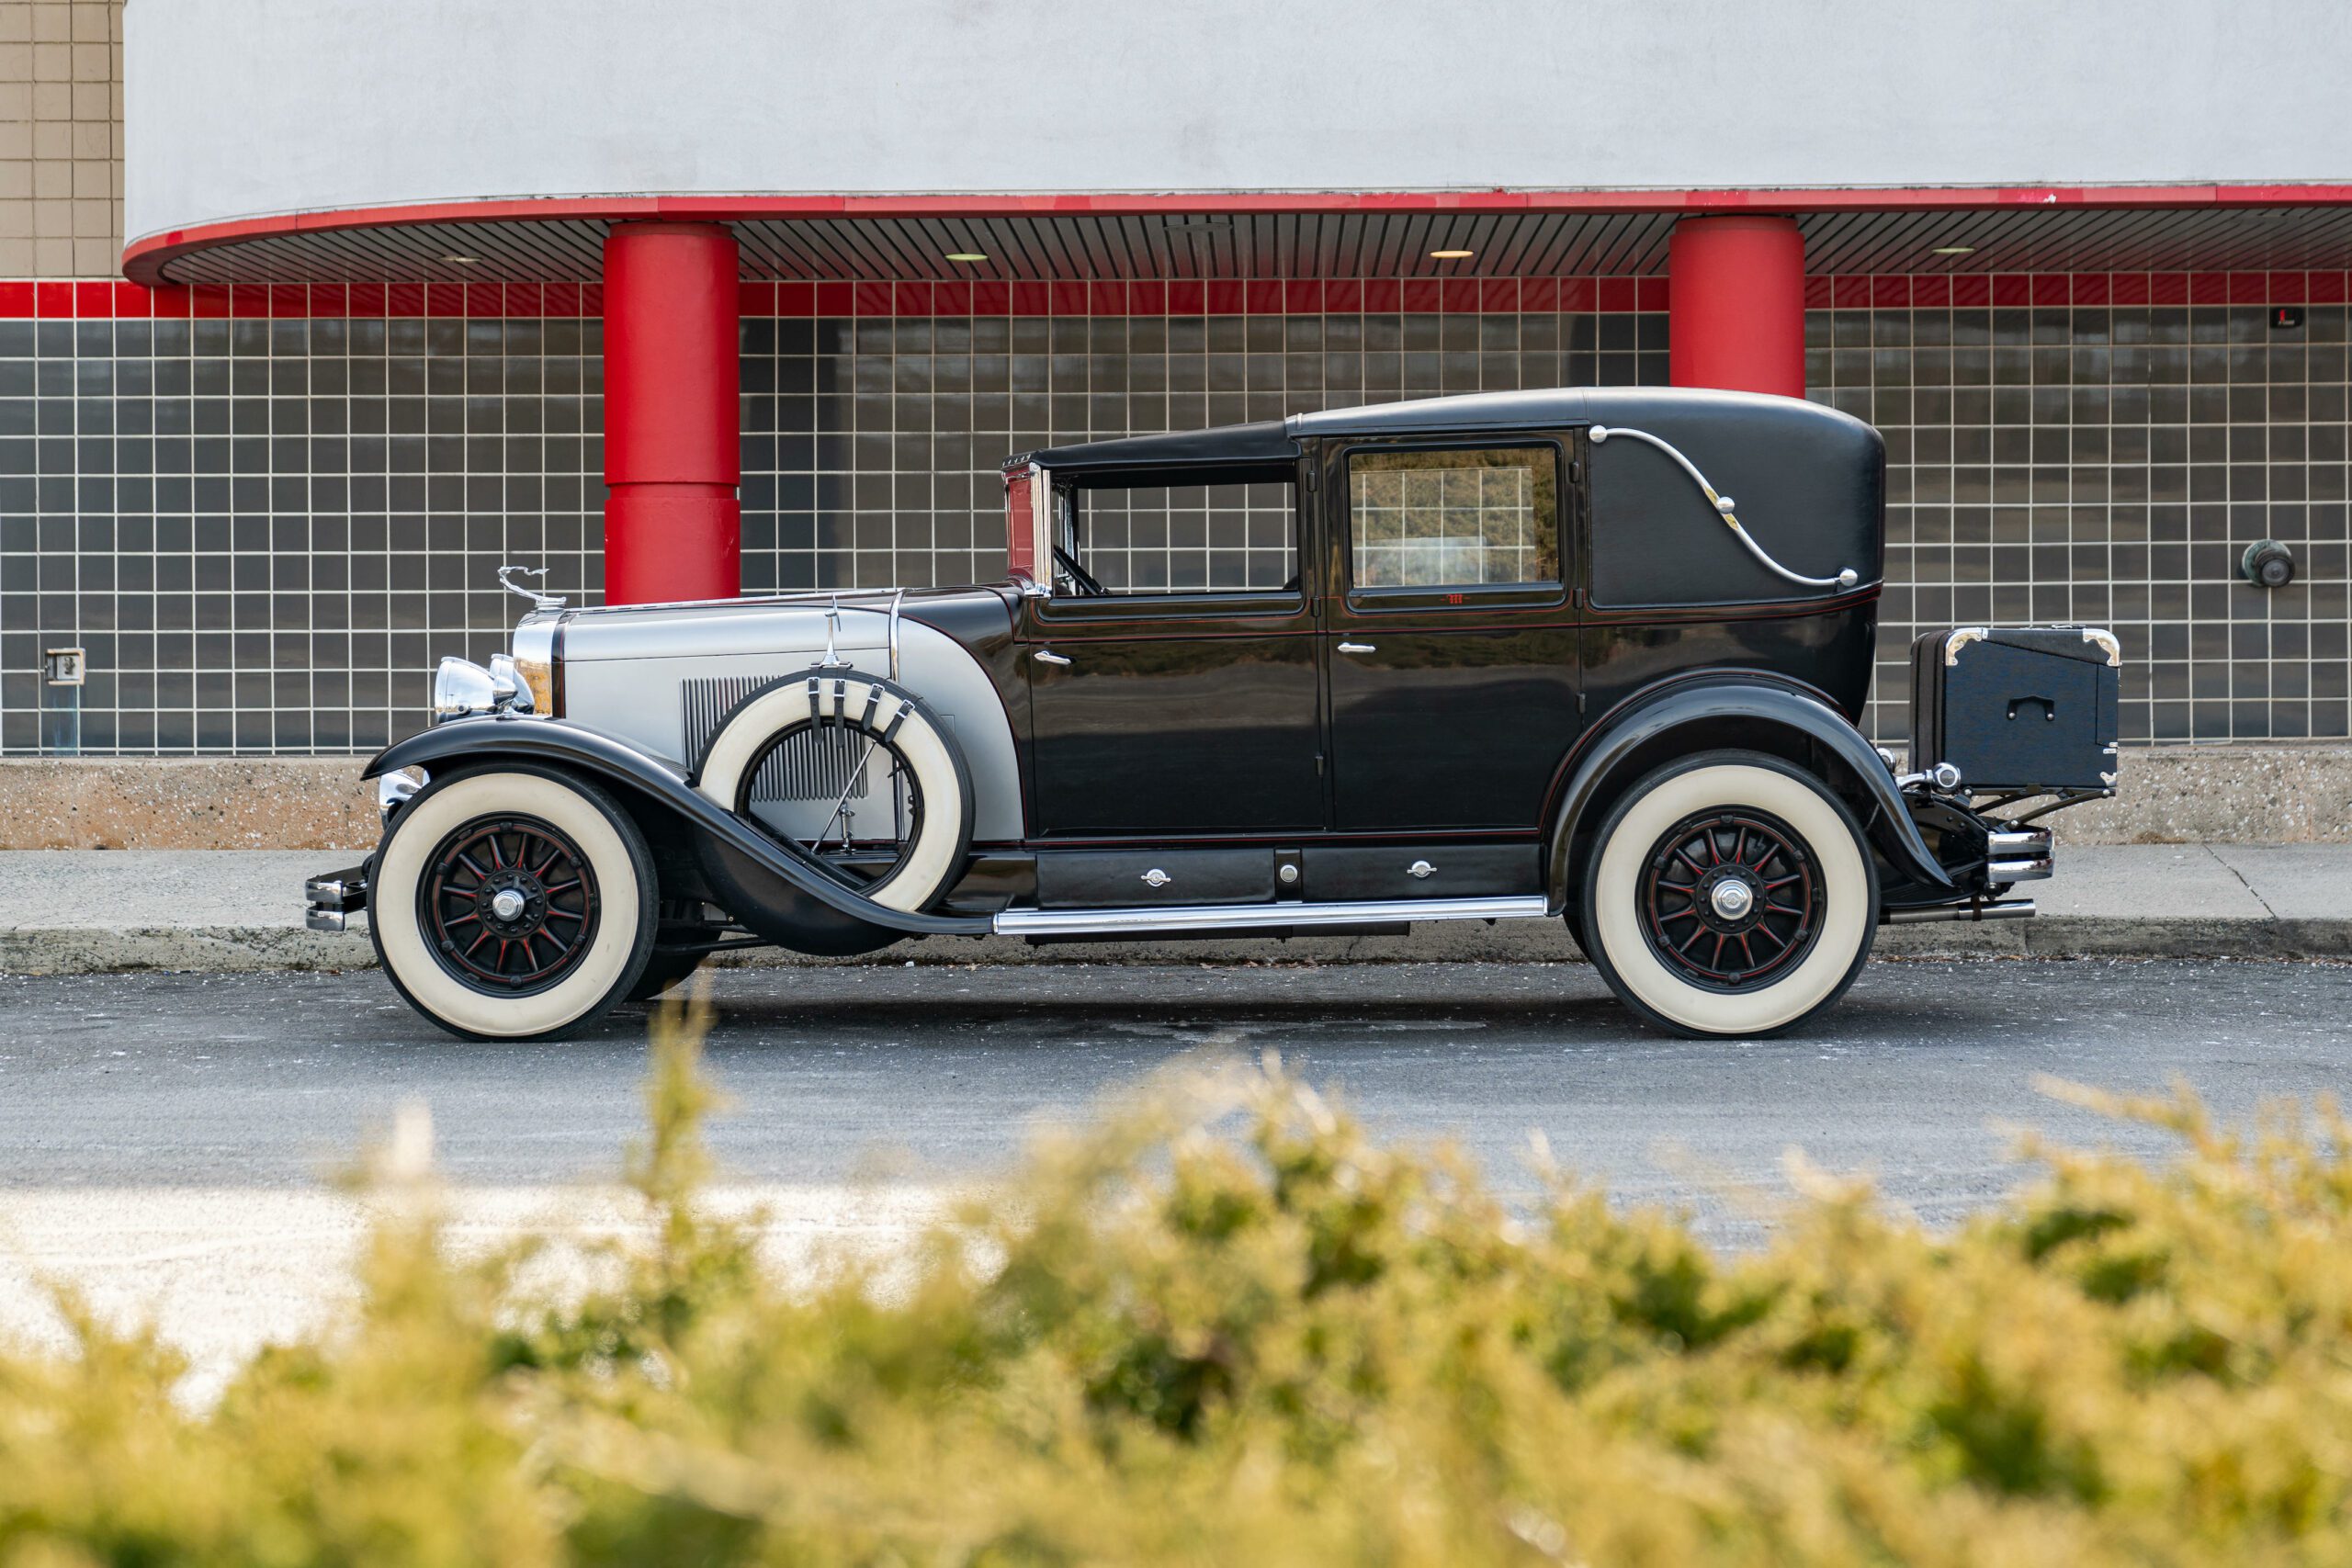 1929 Cadillac Series 341-B V-8 Transformable Town Cabriolet, cadillac, Cadillac V-8